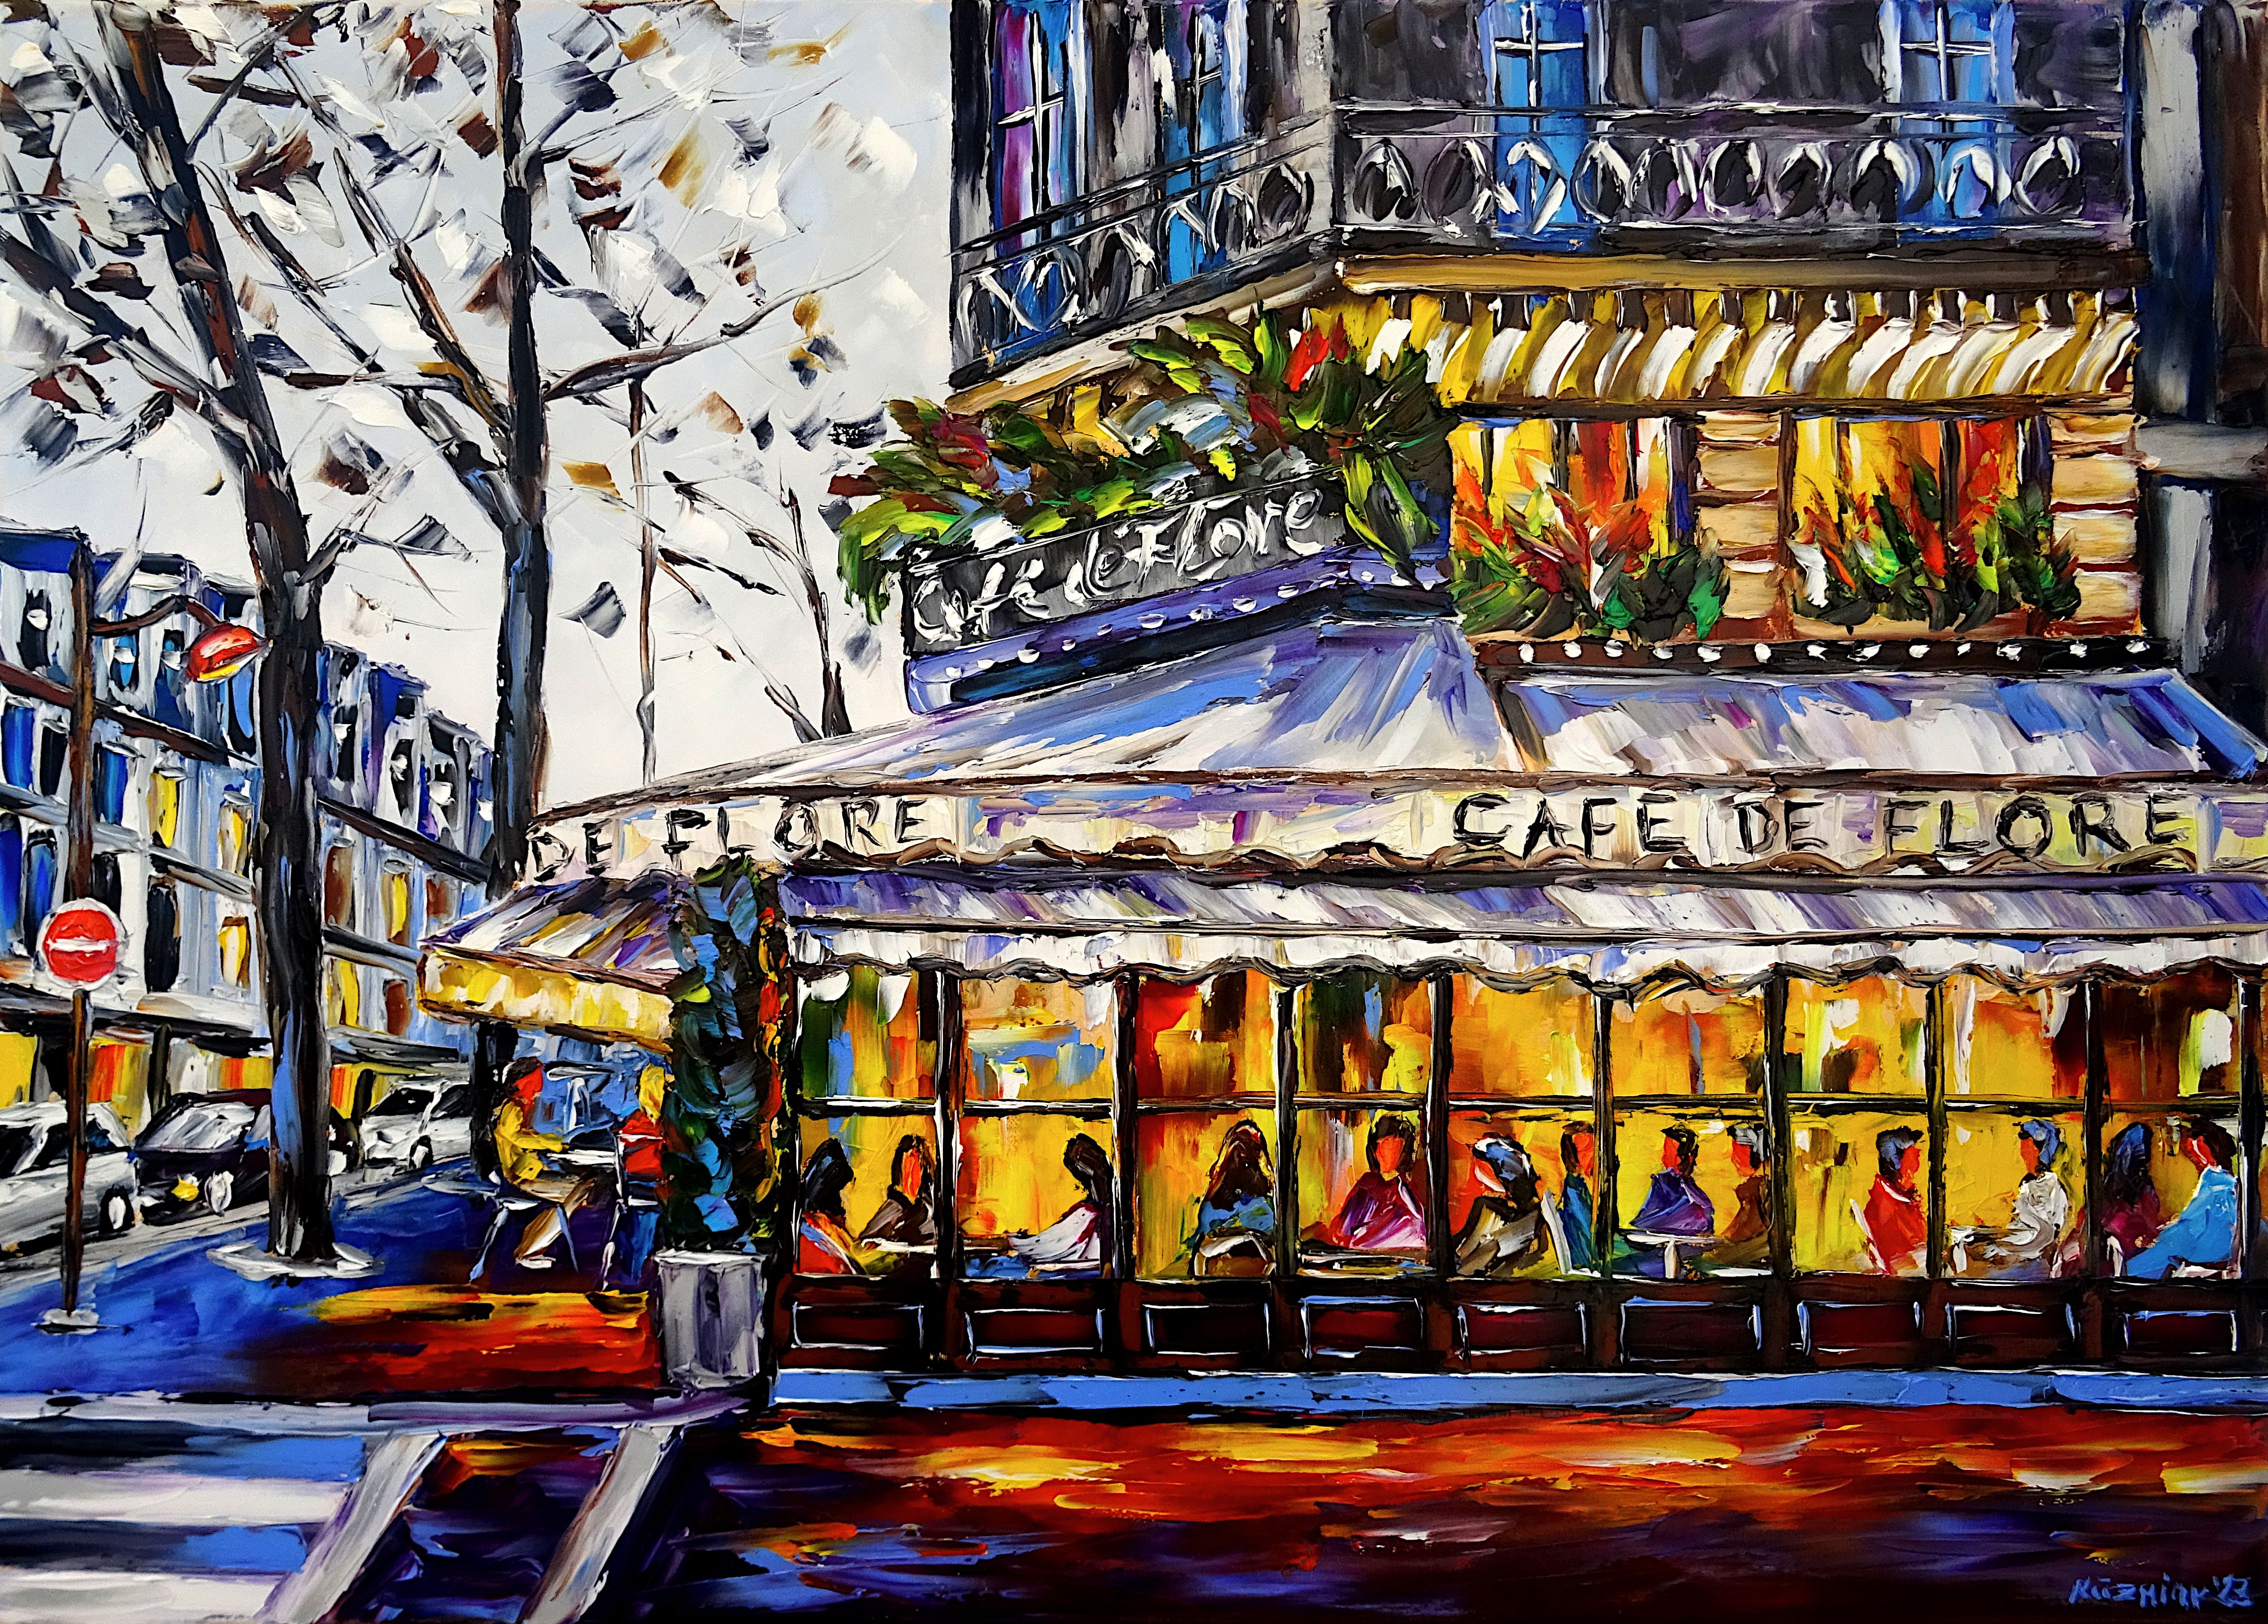 cafe in paris,cafe in the evening,café in the evening light,paris Saint-Germain-des-Prés,corner café,café on the corner,paris in the evening light,cafe de flore in the evening,autumn evening,people in cafe,sitting in cafe,cafe scenery,gray evening sky,luminous picture,luminous painting,cafe de flore painting,cafe painting,cafe art,cafe light,people in the window,paris in autumn,paris city scenery,paris autumn mood,paris love,paris lover,i love paris,beautiful paris,paris cityscape,palette knife oil painting,modern art,figurative art,figurative painting,contemporary painting,abstract painting,lively colors,colorful painting,bright colors,impasto painting